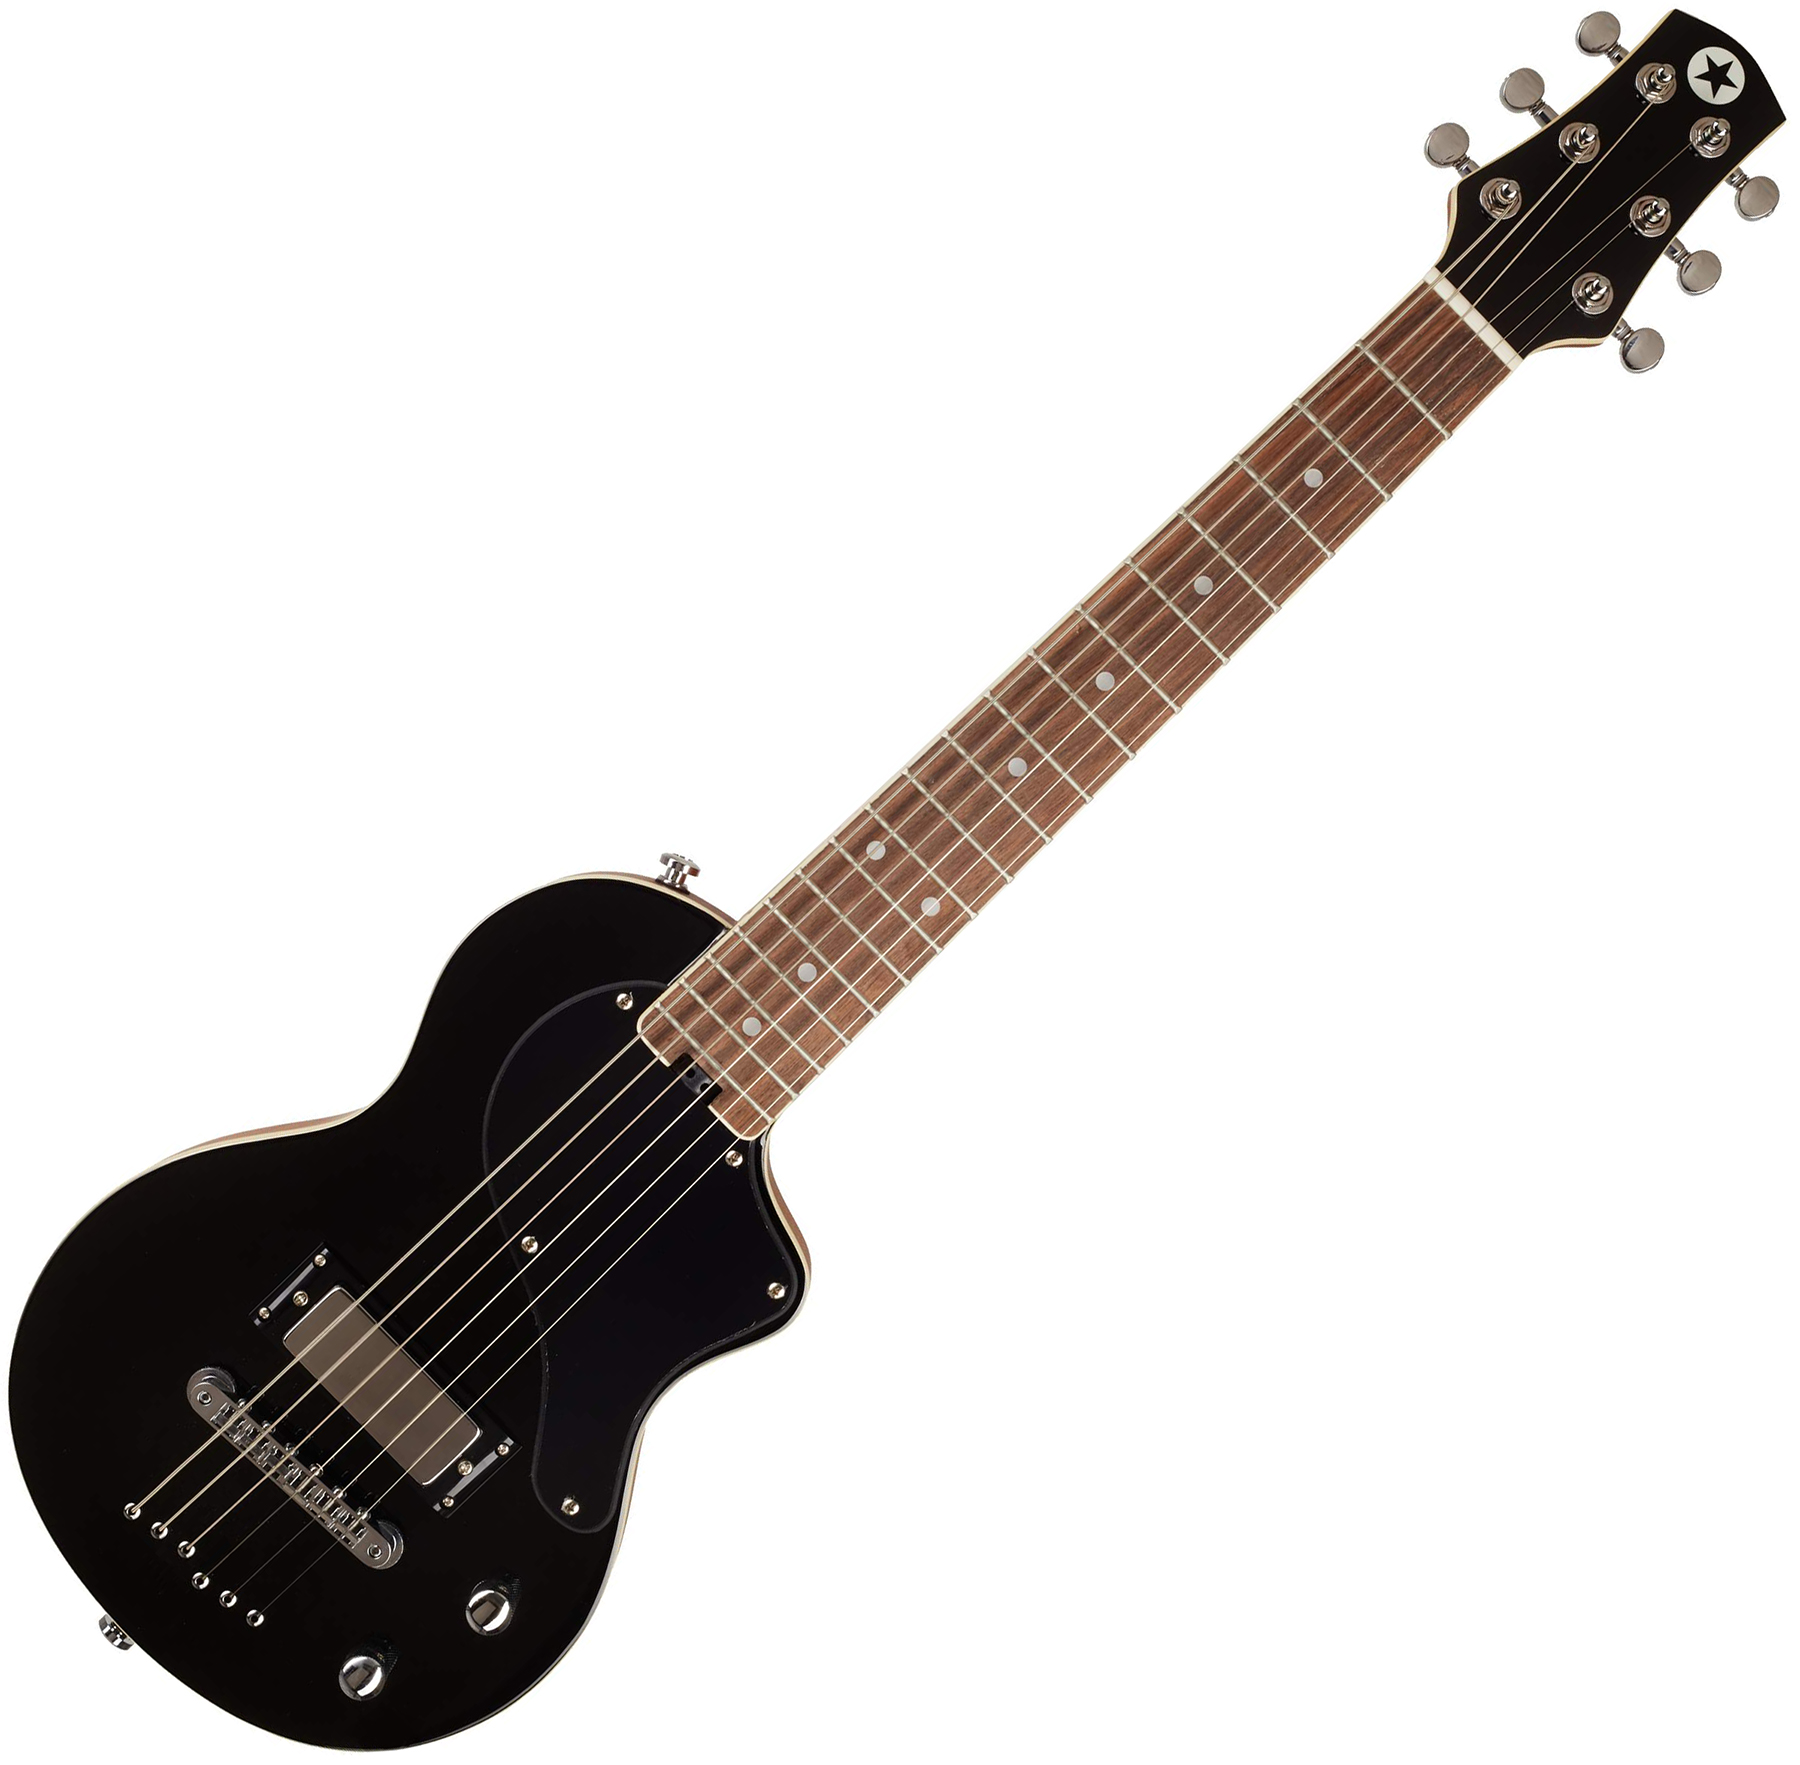 Blackstar Carry-on Travel Guitar Standard Pack +amplug2 Fly +housse - Jet Black - Elektrische gitaar set - Variation 1